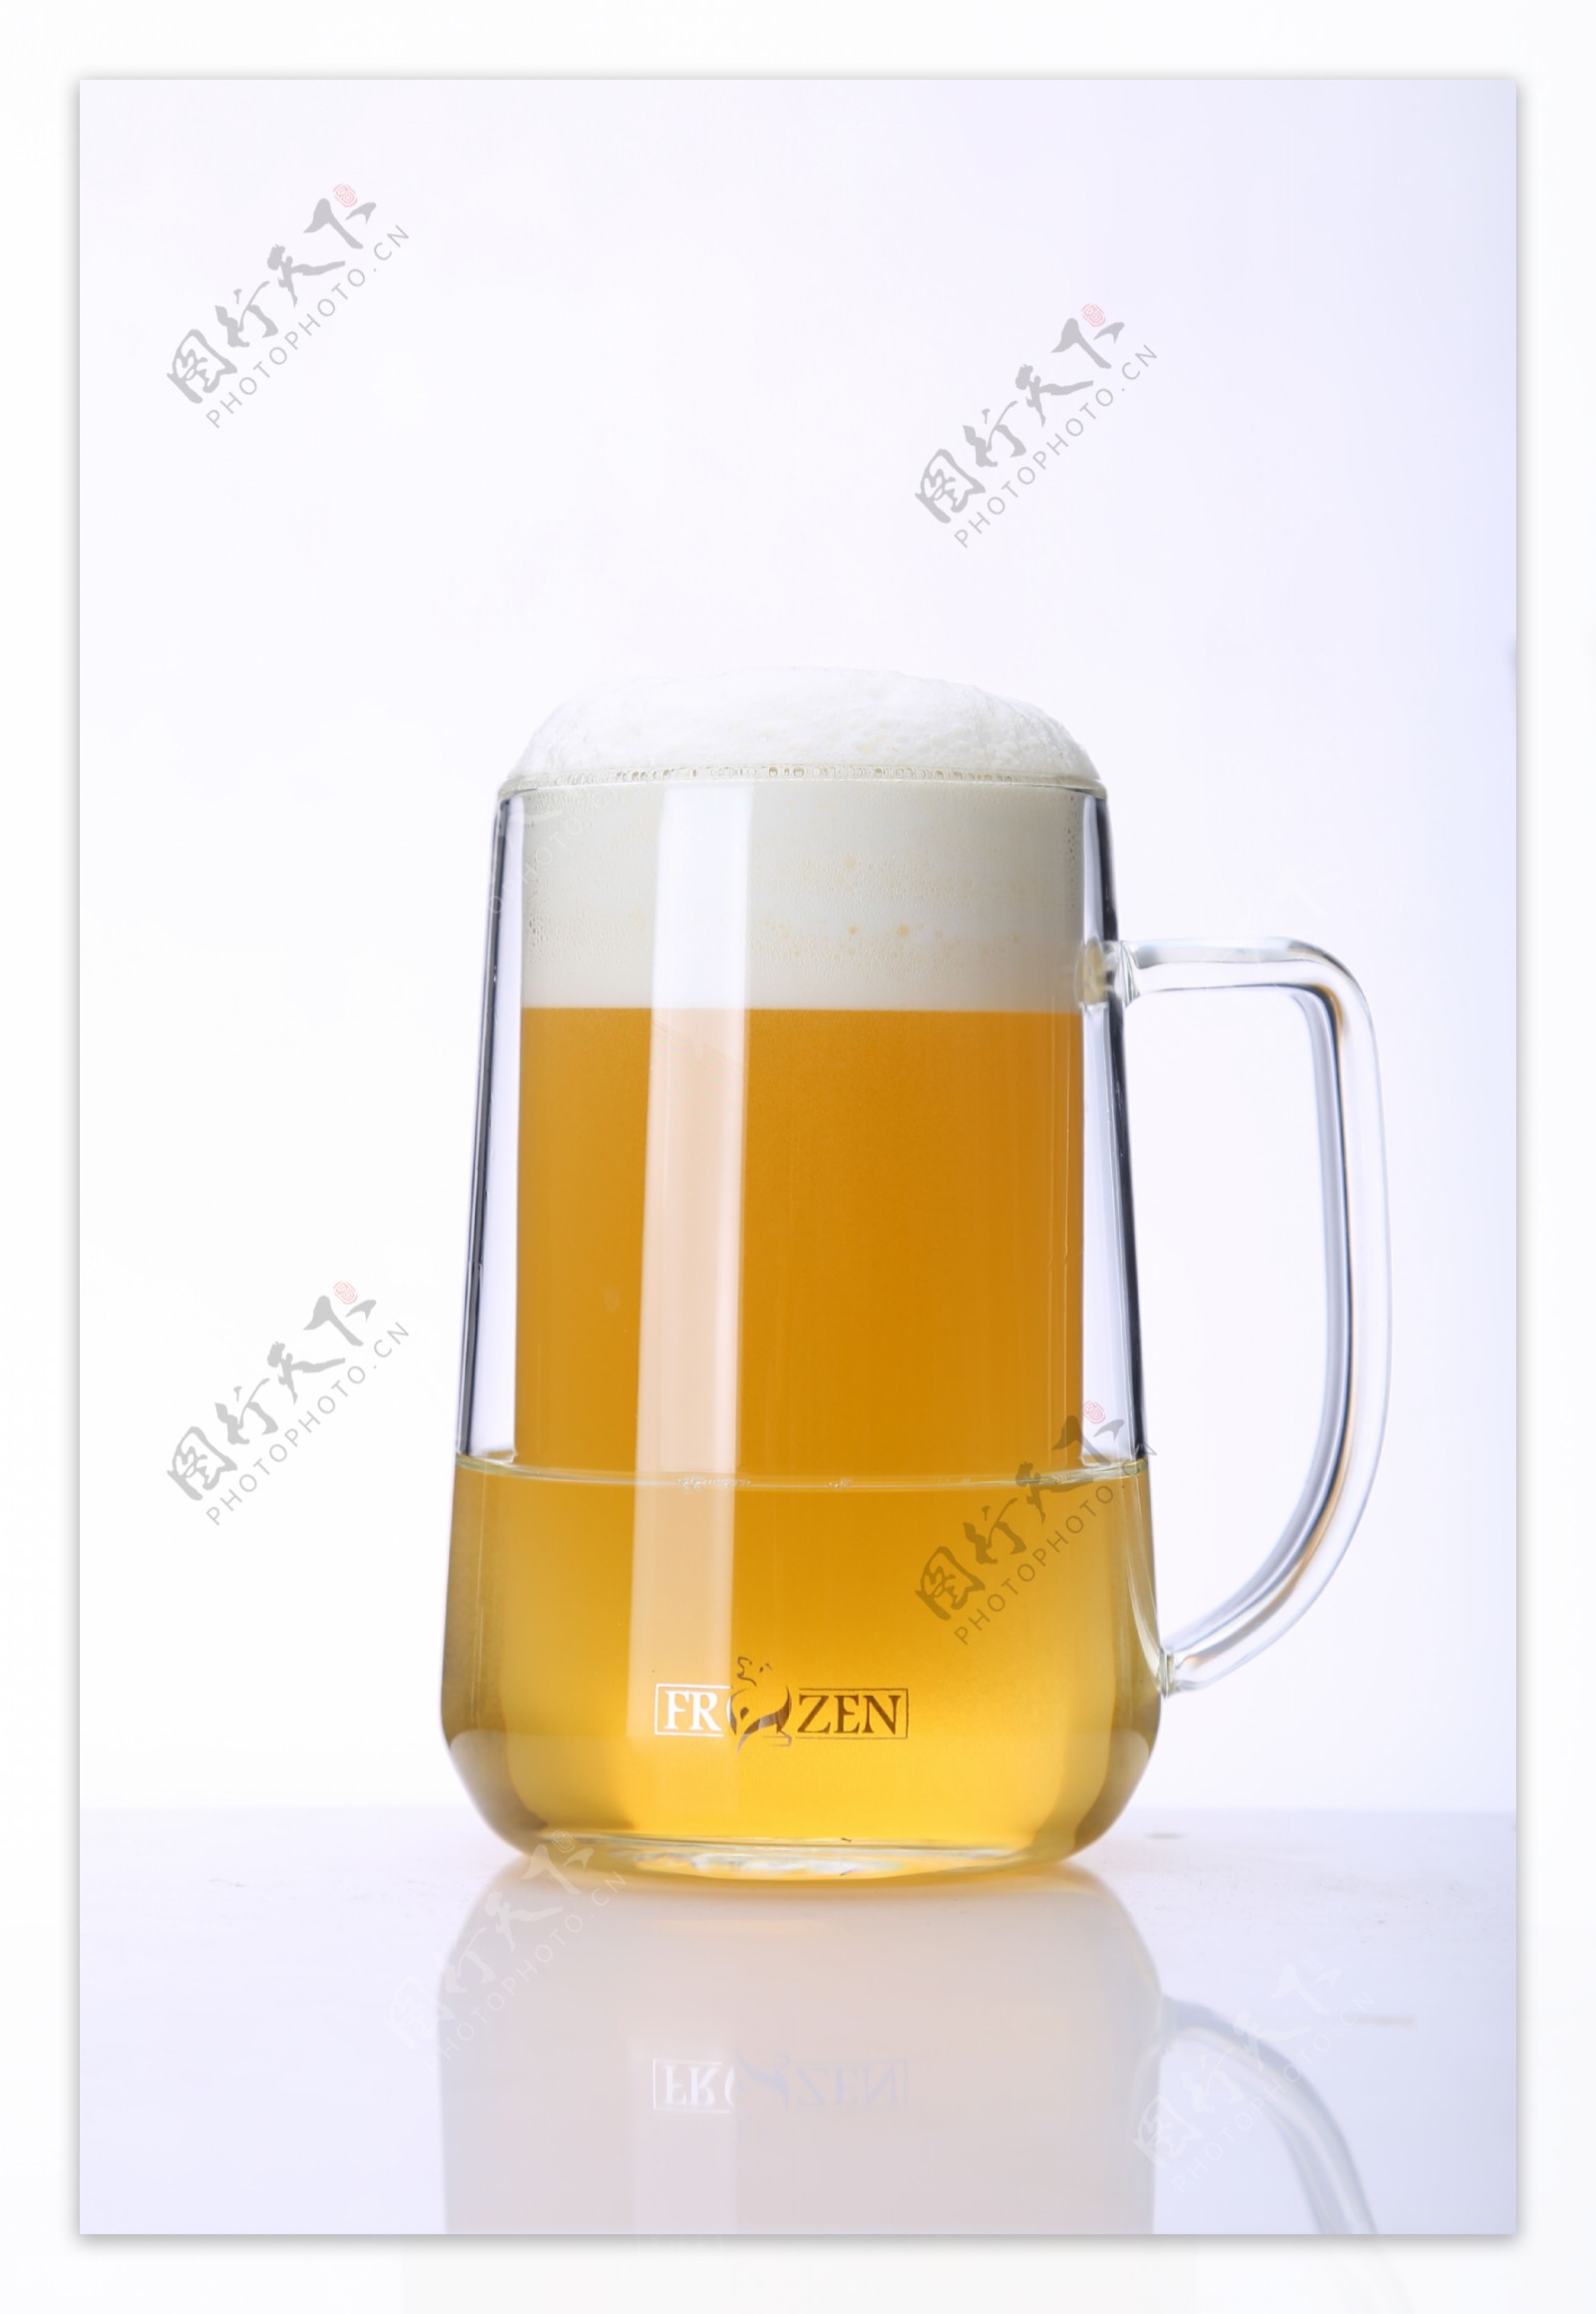 啤酒玻璃杯